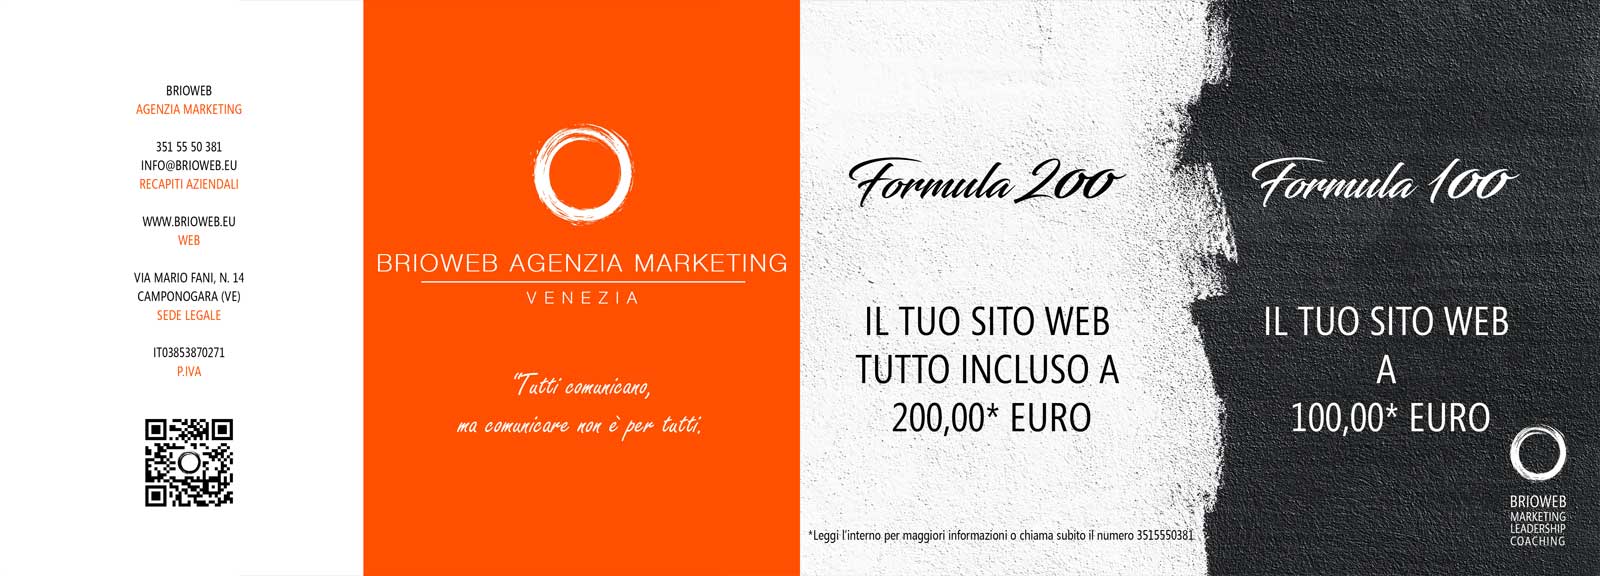 Agenzia marketing e neuromarketing | Francesco Russo consulente marketing | BrioWeb consulenza marketing  e seo Treviso Padova Venezia